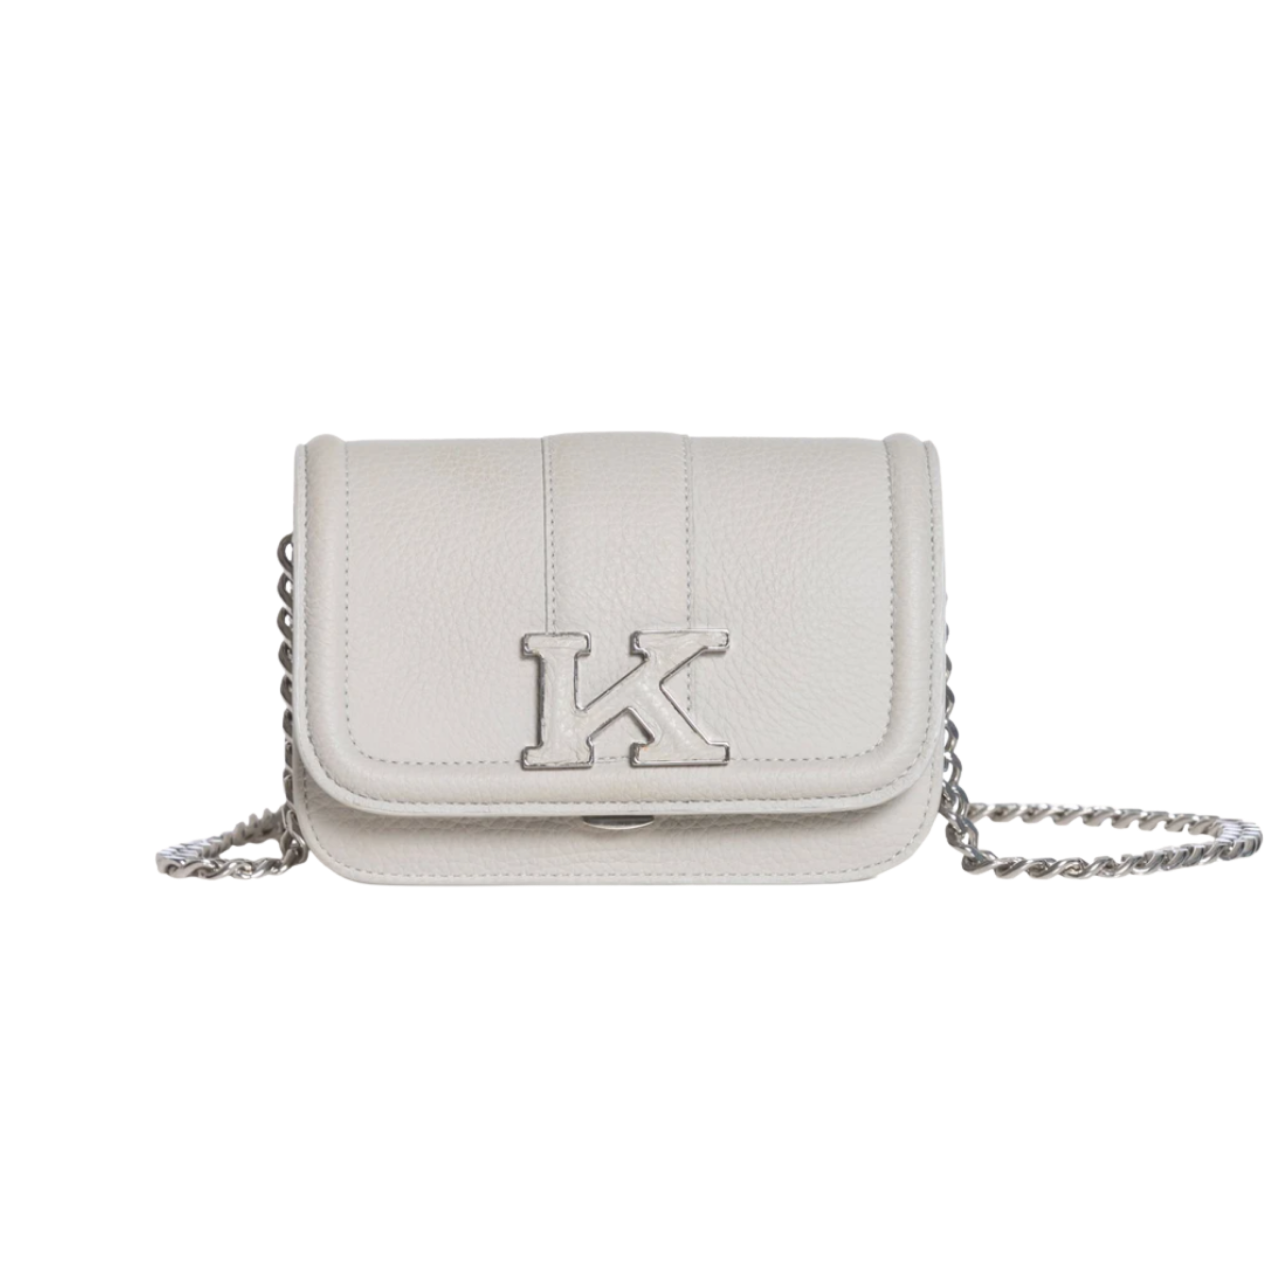 White Kiton purse with “K” detail